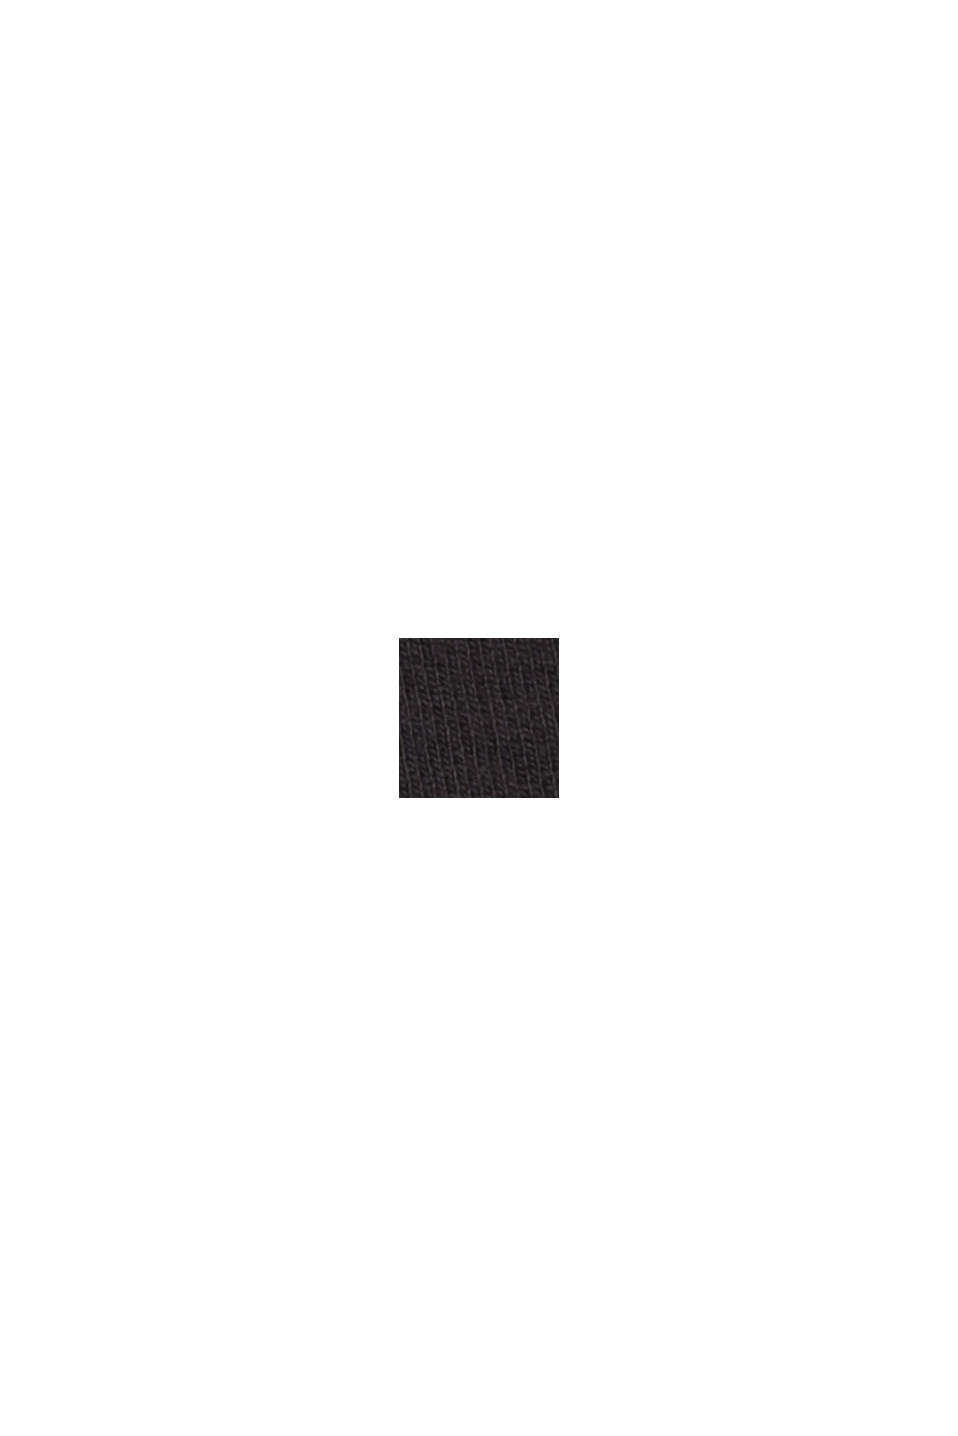 Reciclado: Pantalón tobillero en jersey de punto, BLACK, swatch